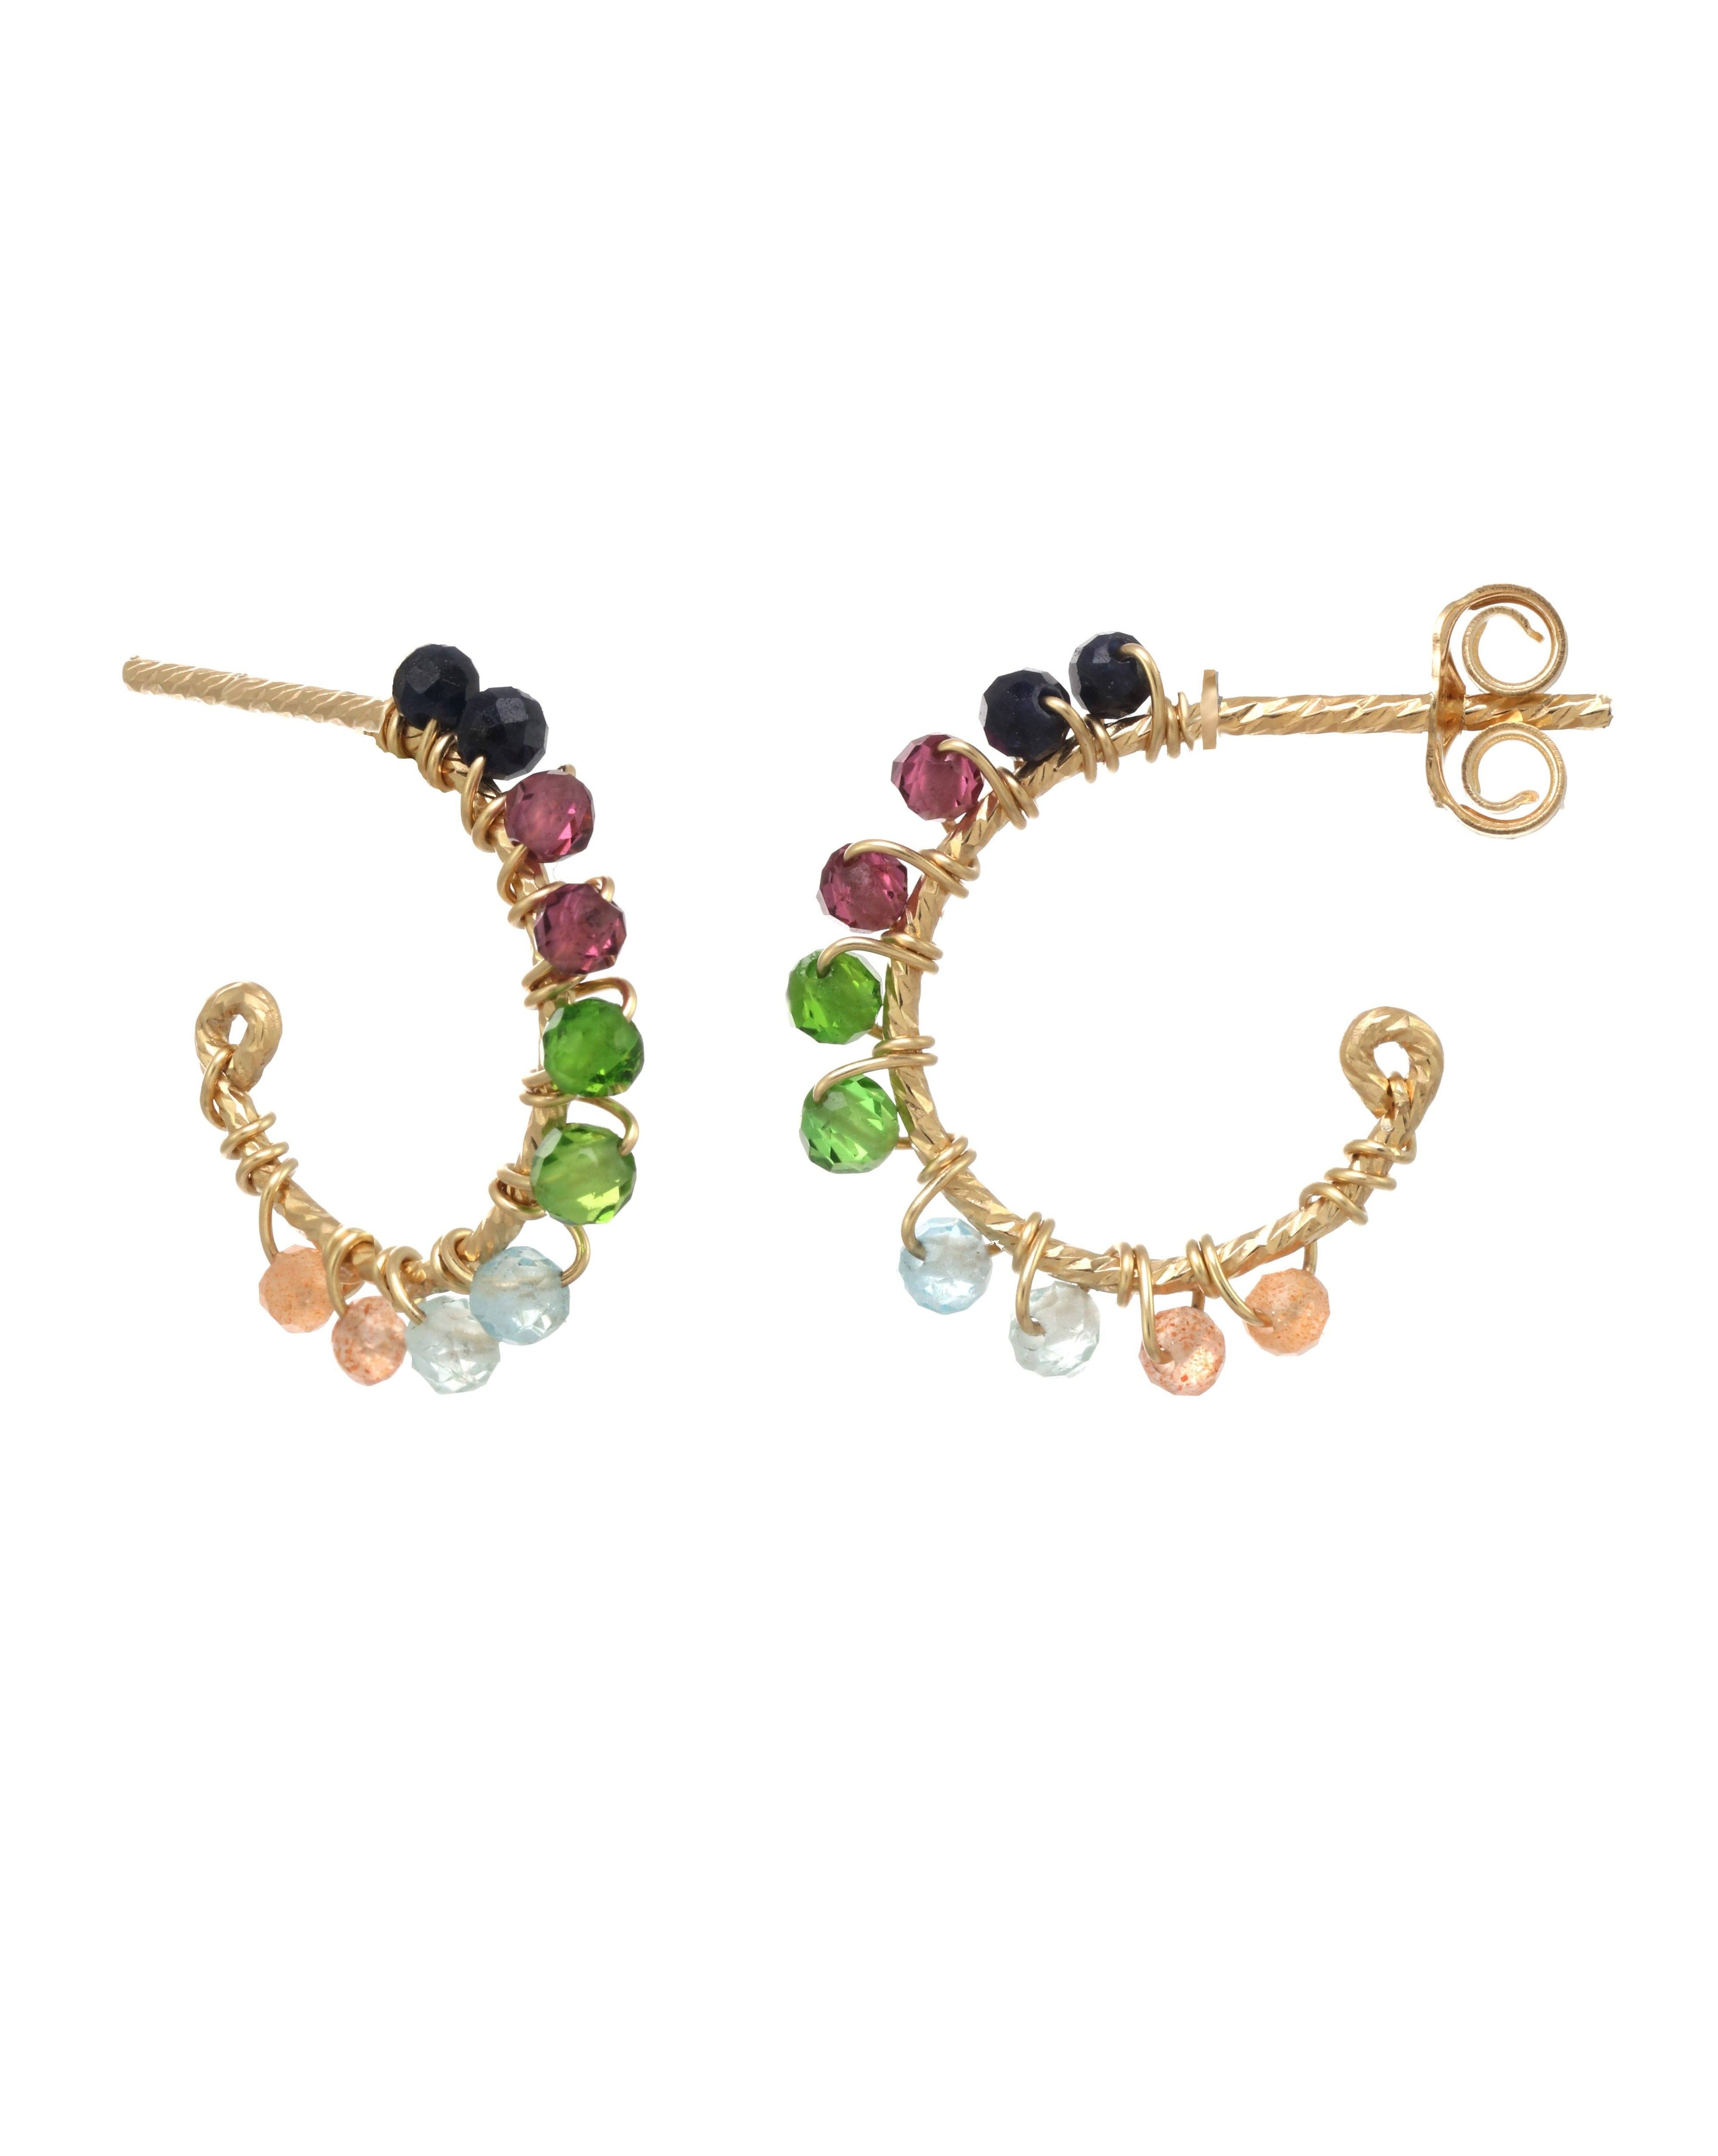 Sadie Hoop Earrings by KOZAKH. Hoop shape stud earrings in 14K Gold Filled, featuring faceted 2mm Aquamarine, Garnet, Imperial Topaz, Emerald, and Sapphire.